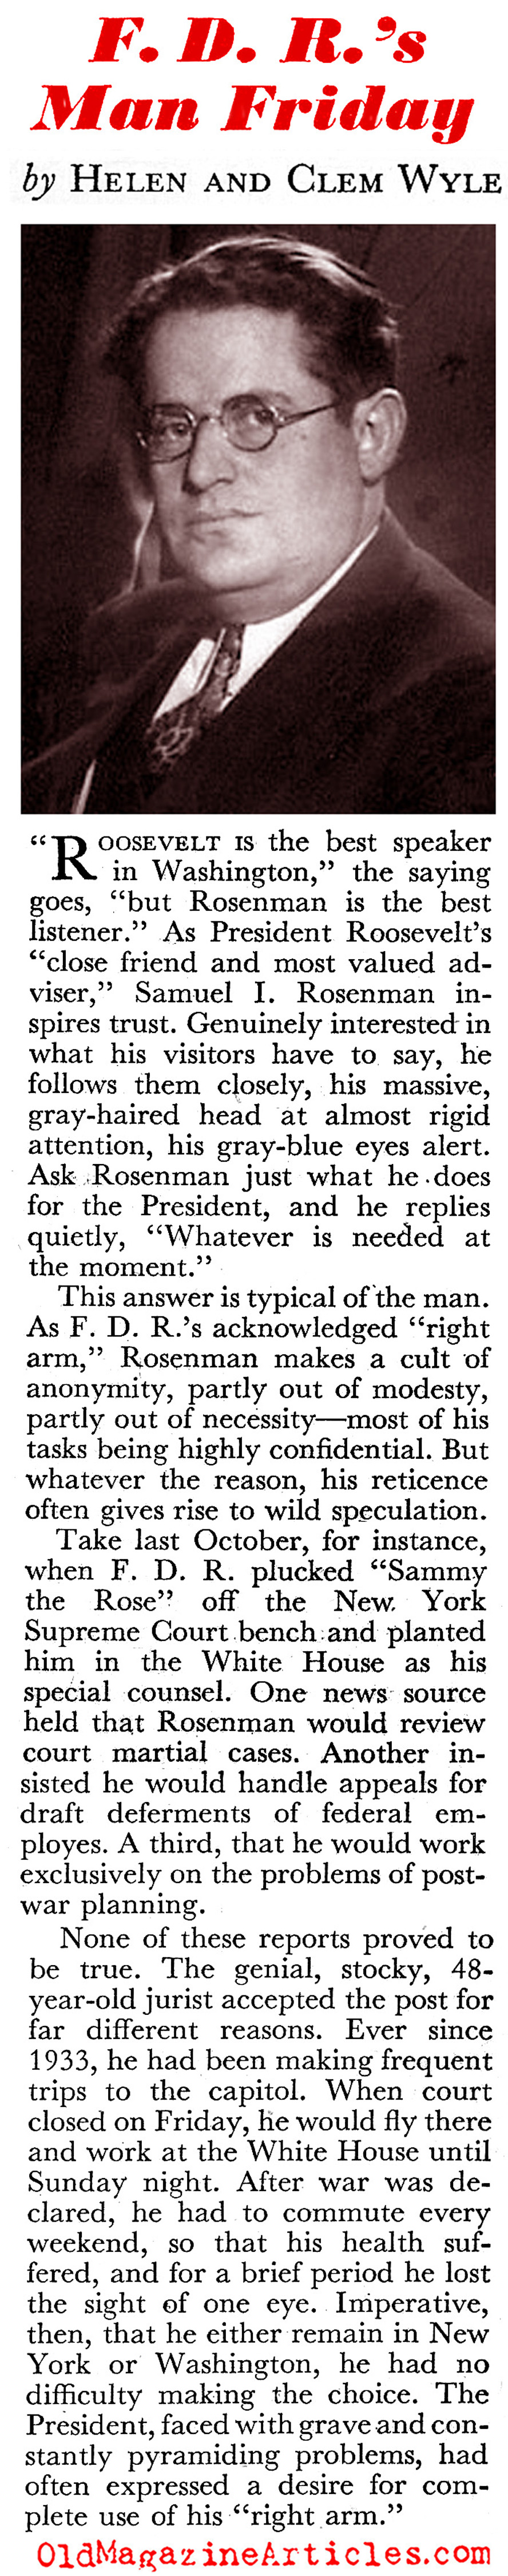 Sam Rosenman: FDR's Right Arm (Coronet Magazine, 1944)